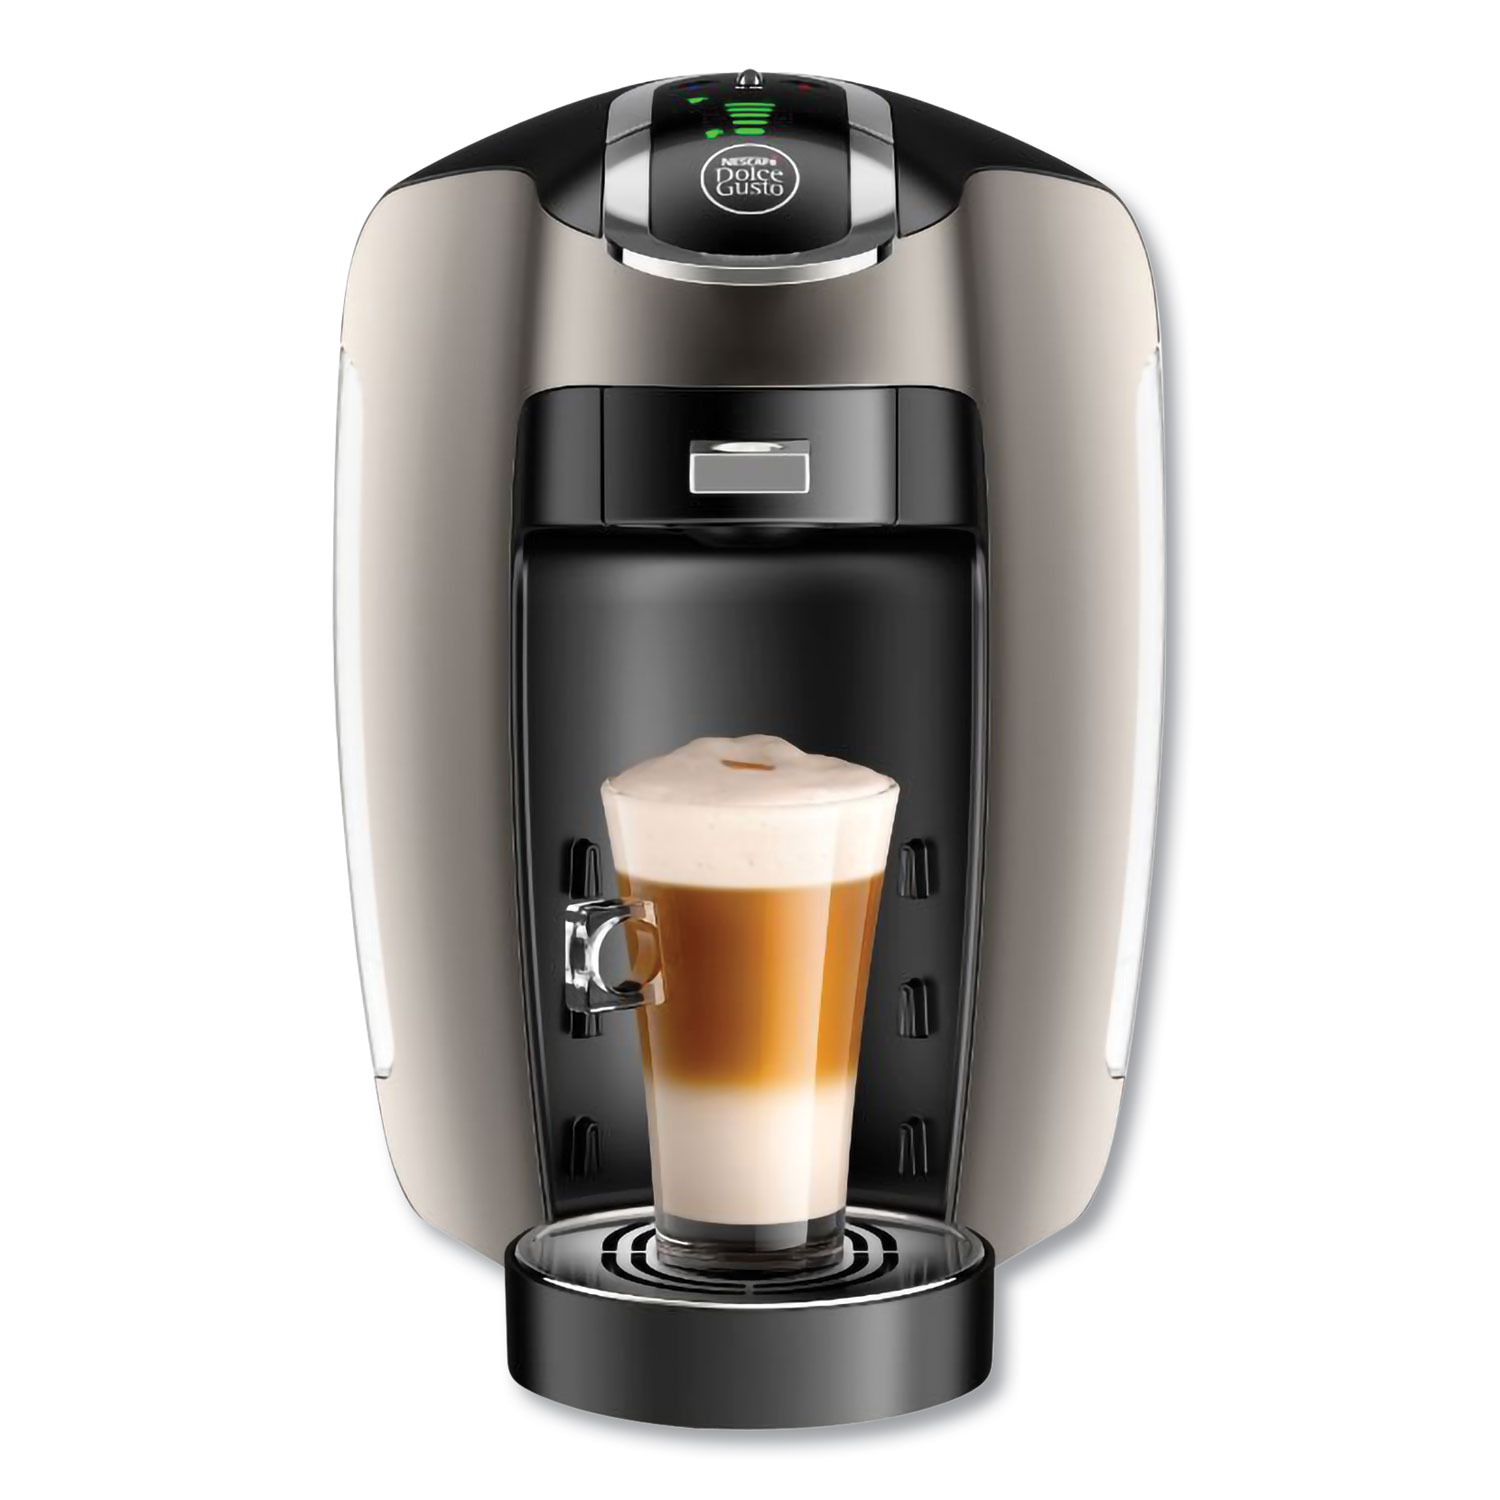  NESCAFÉ Dolce Gusto 87104 Esperta 2 Automatic Coffee Machine, Black/Gray (NES87104) 